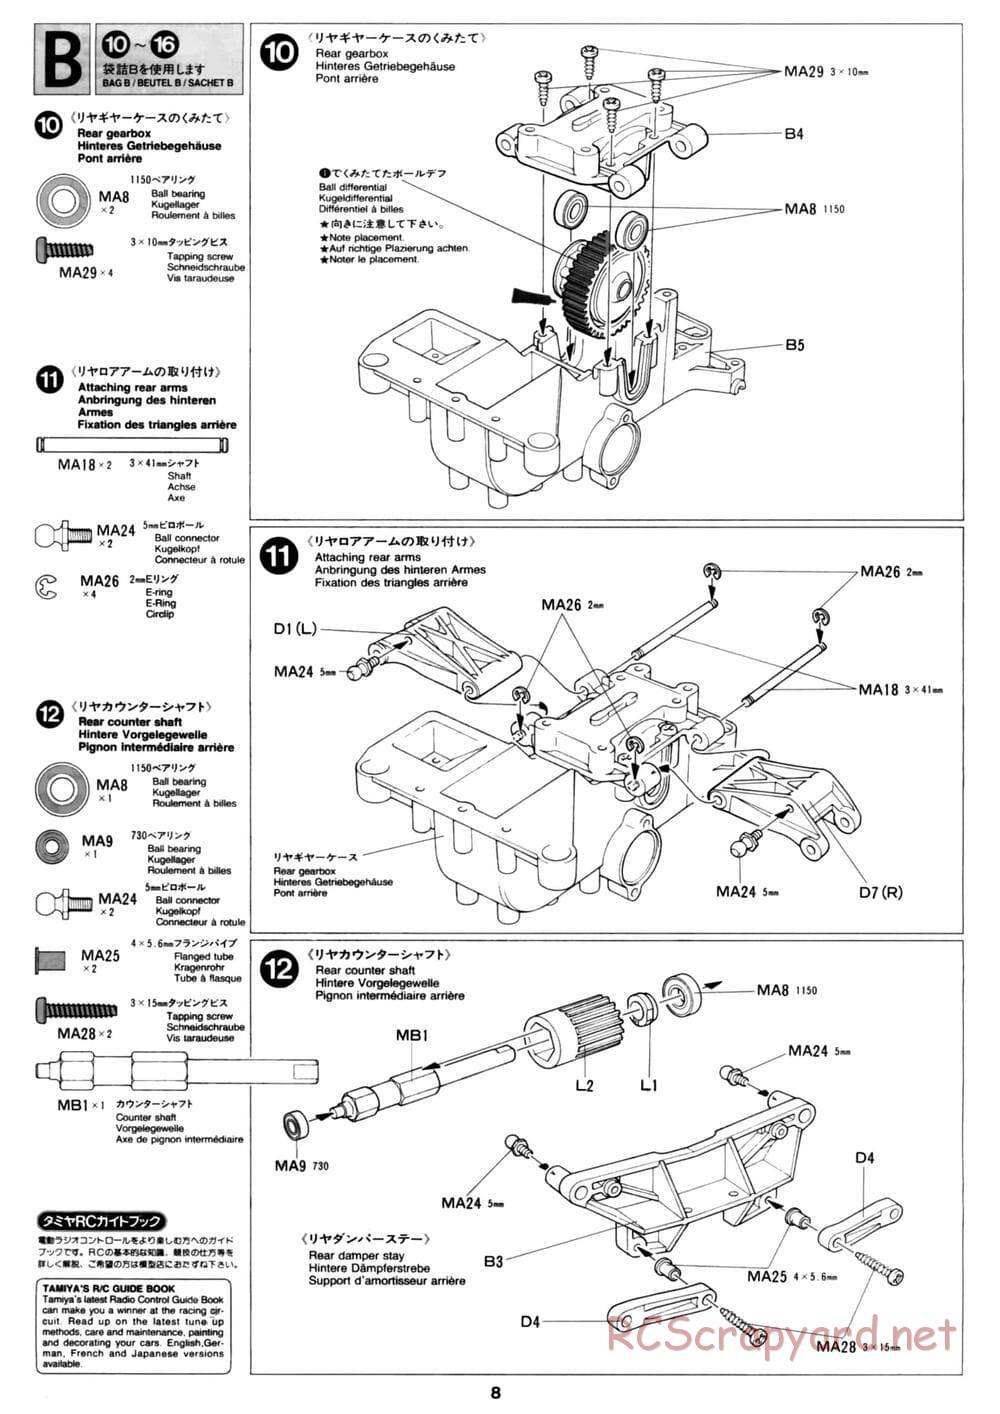 Tamiya - David Jun TA03F Pro Chassis - Manual - Page 8